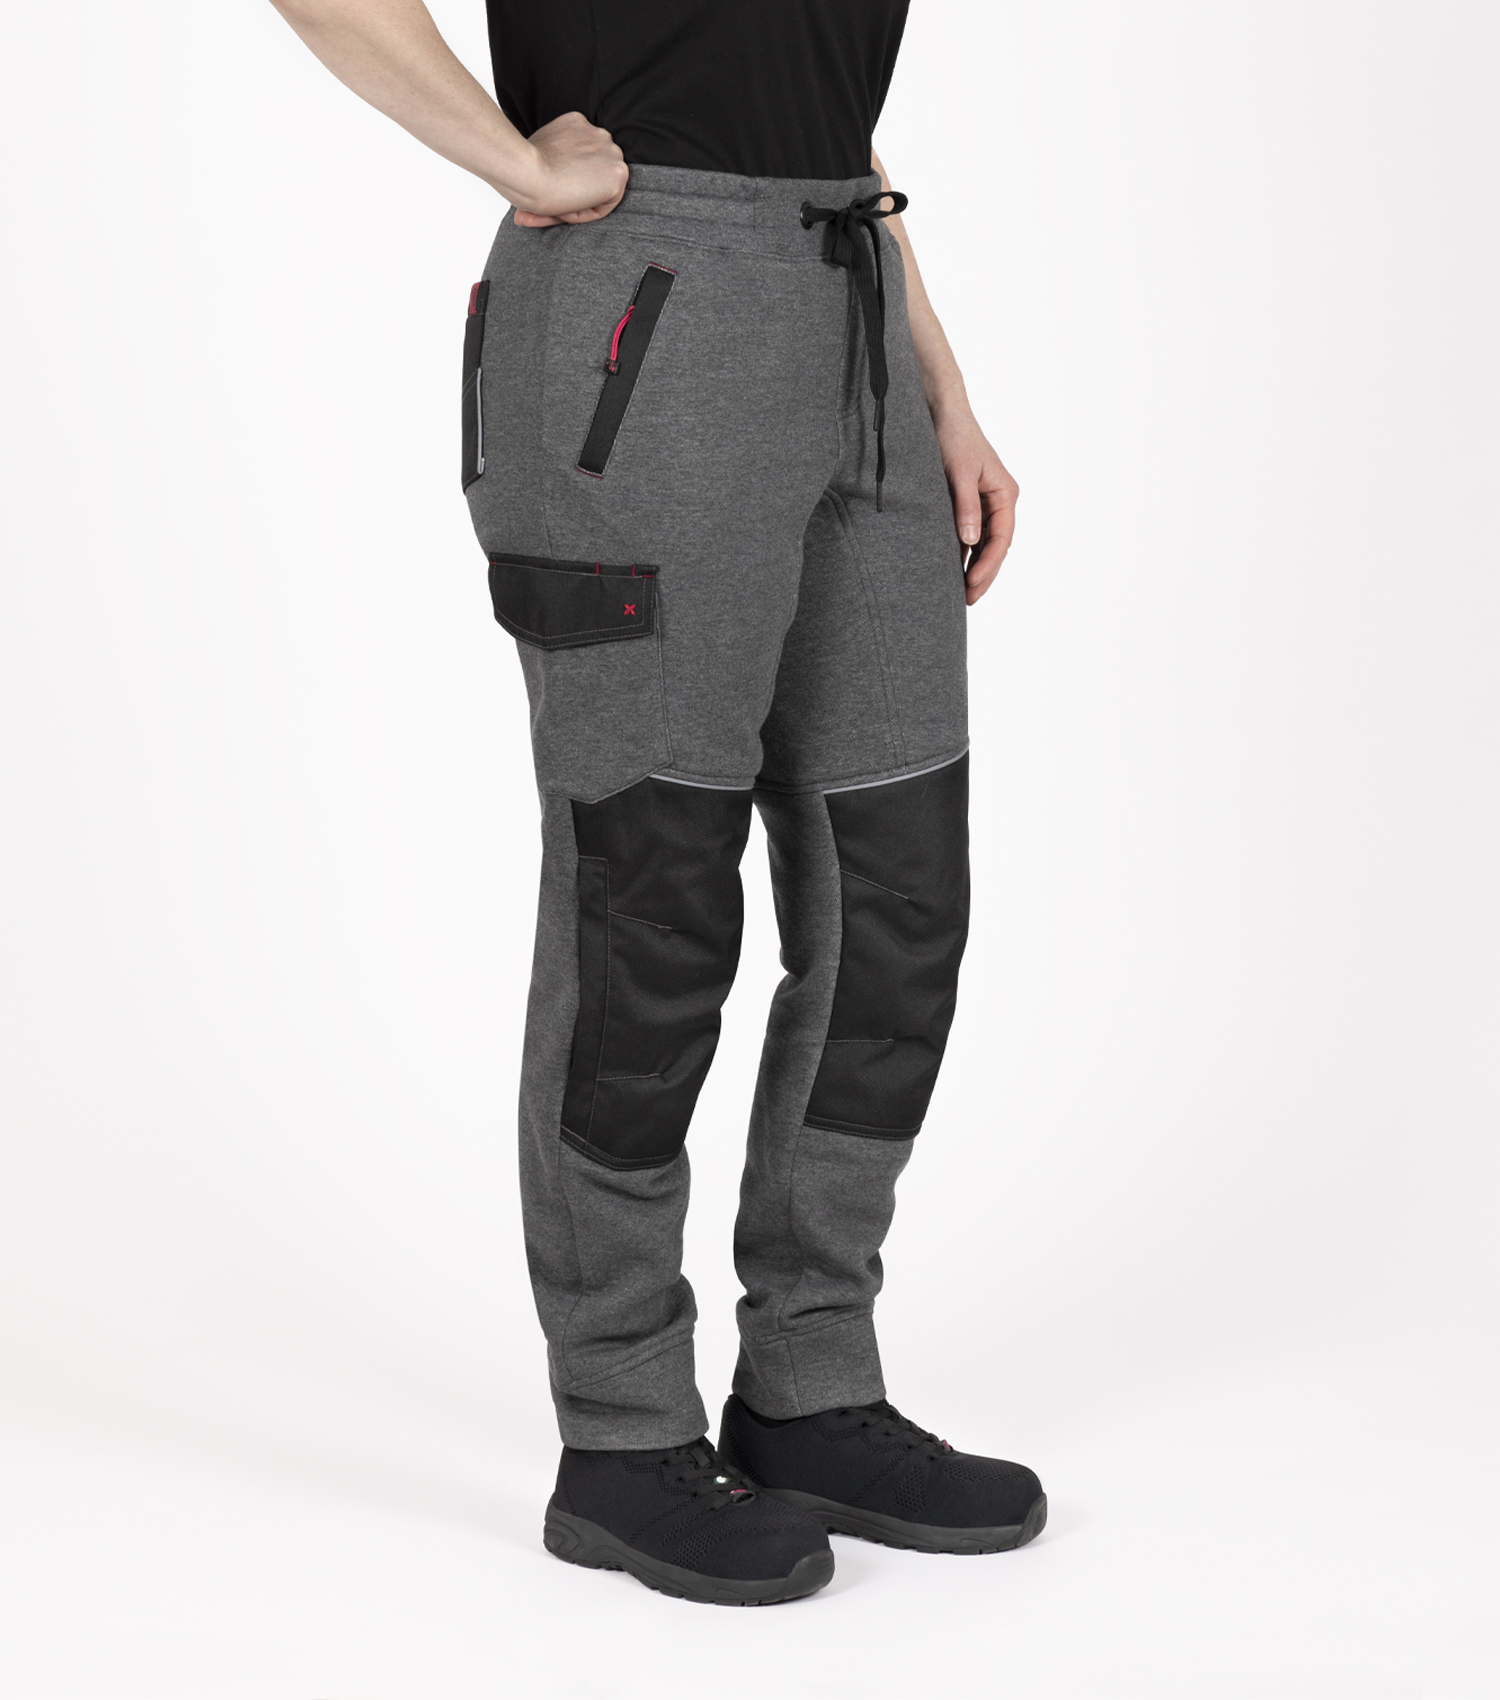 Pantalon de travail en molleton pour femme - Couleur Gris - PF847 - vue en angle